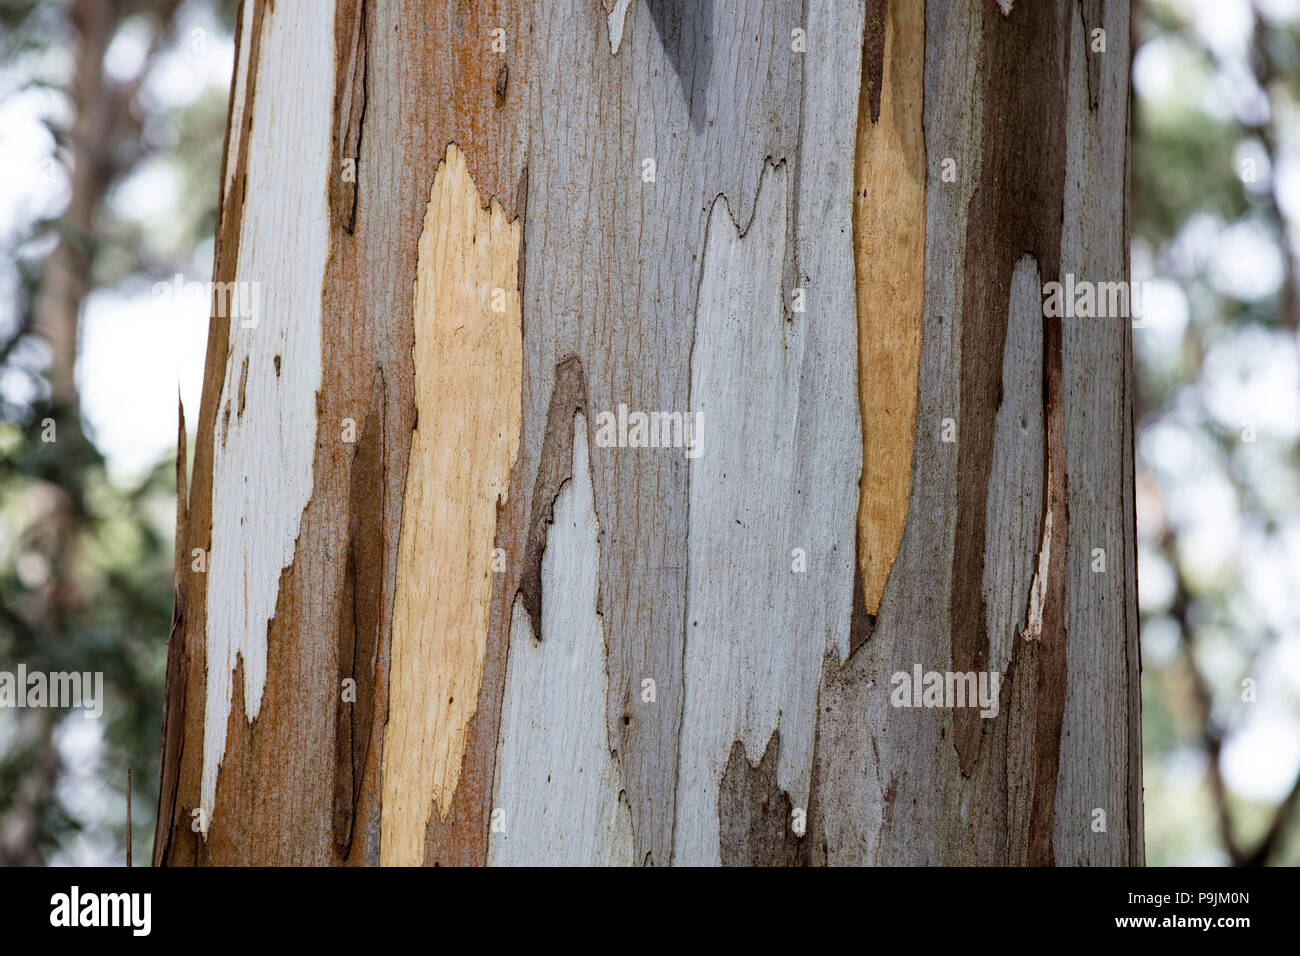 Detail, bark of eucalyptus tree (Eucalyptus), Australia Stock Photo